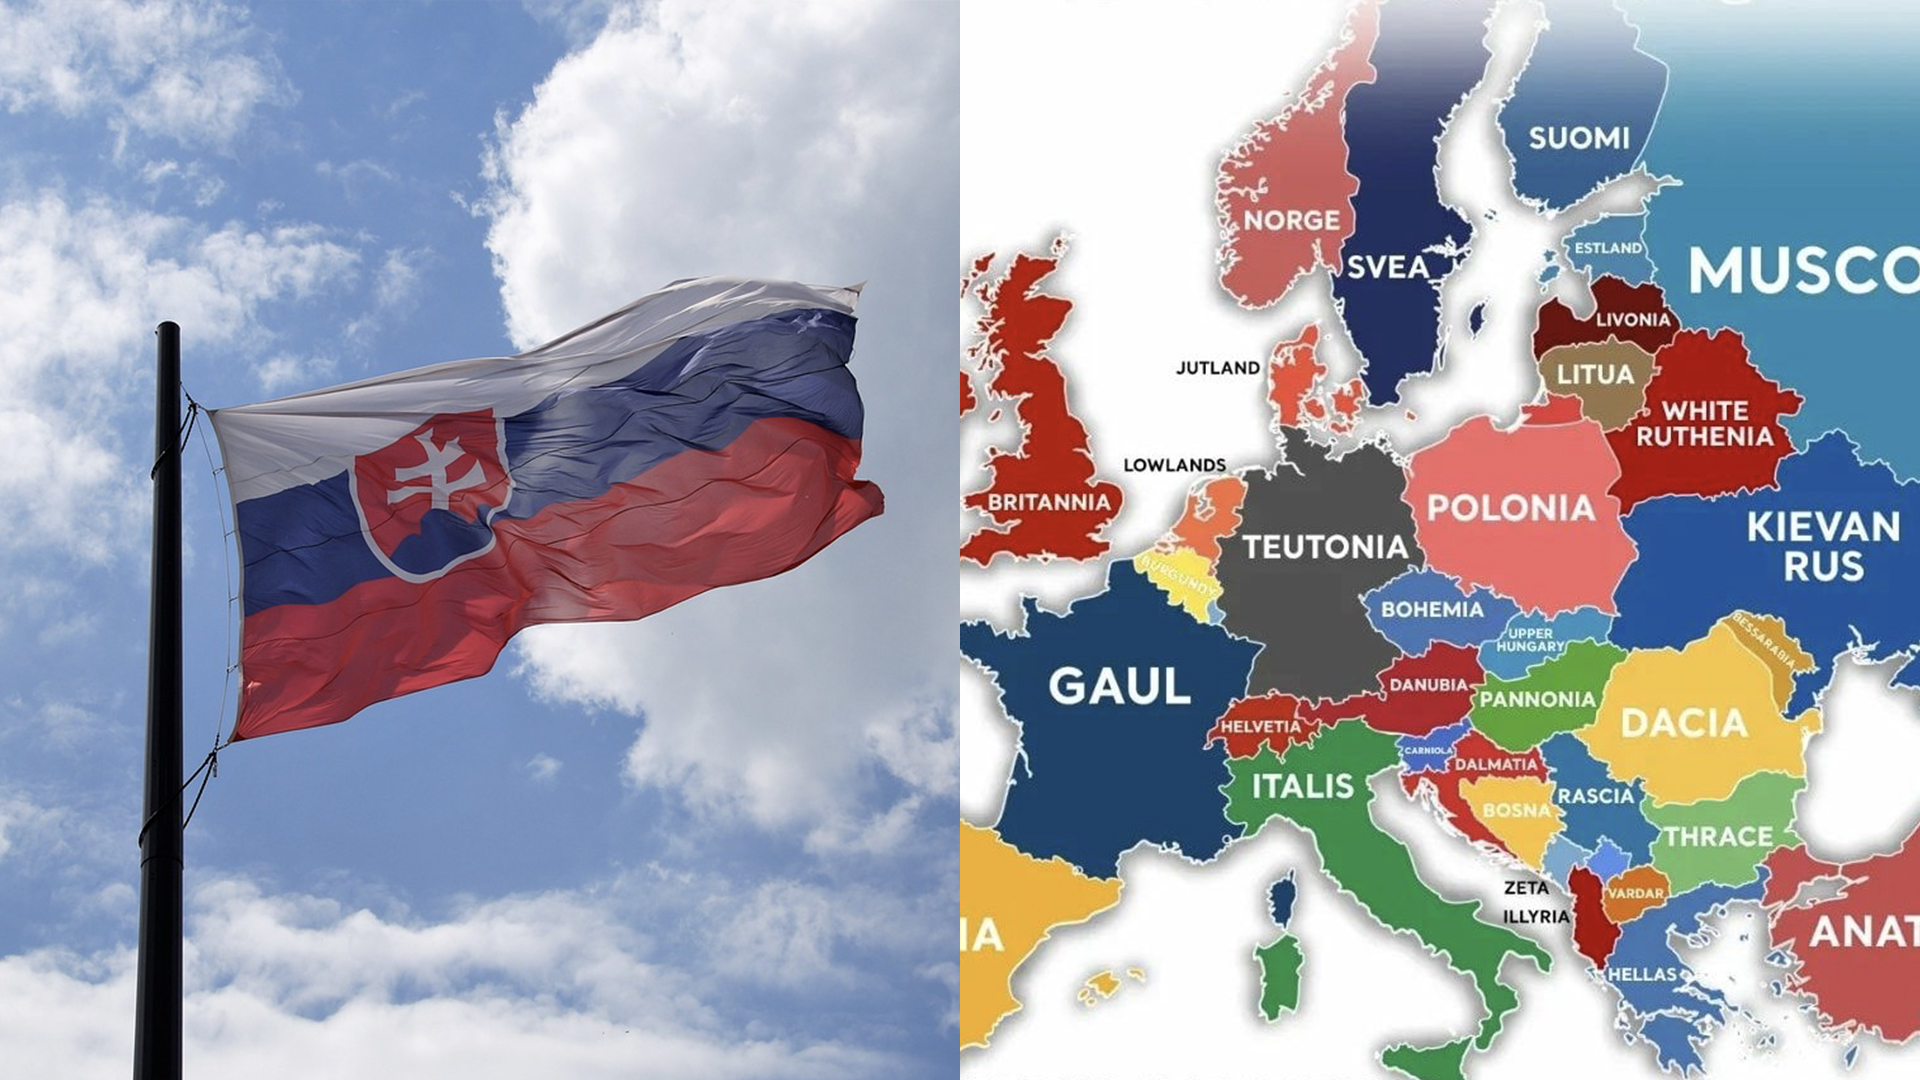 Les Slovaques ont été indignés par la carte de l’IA : nous sommes la « Haute-Hongrie »